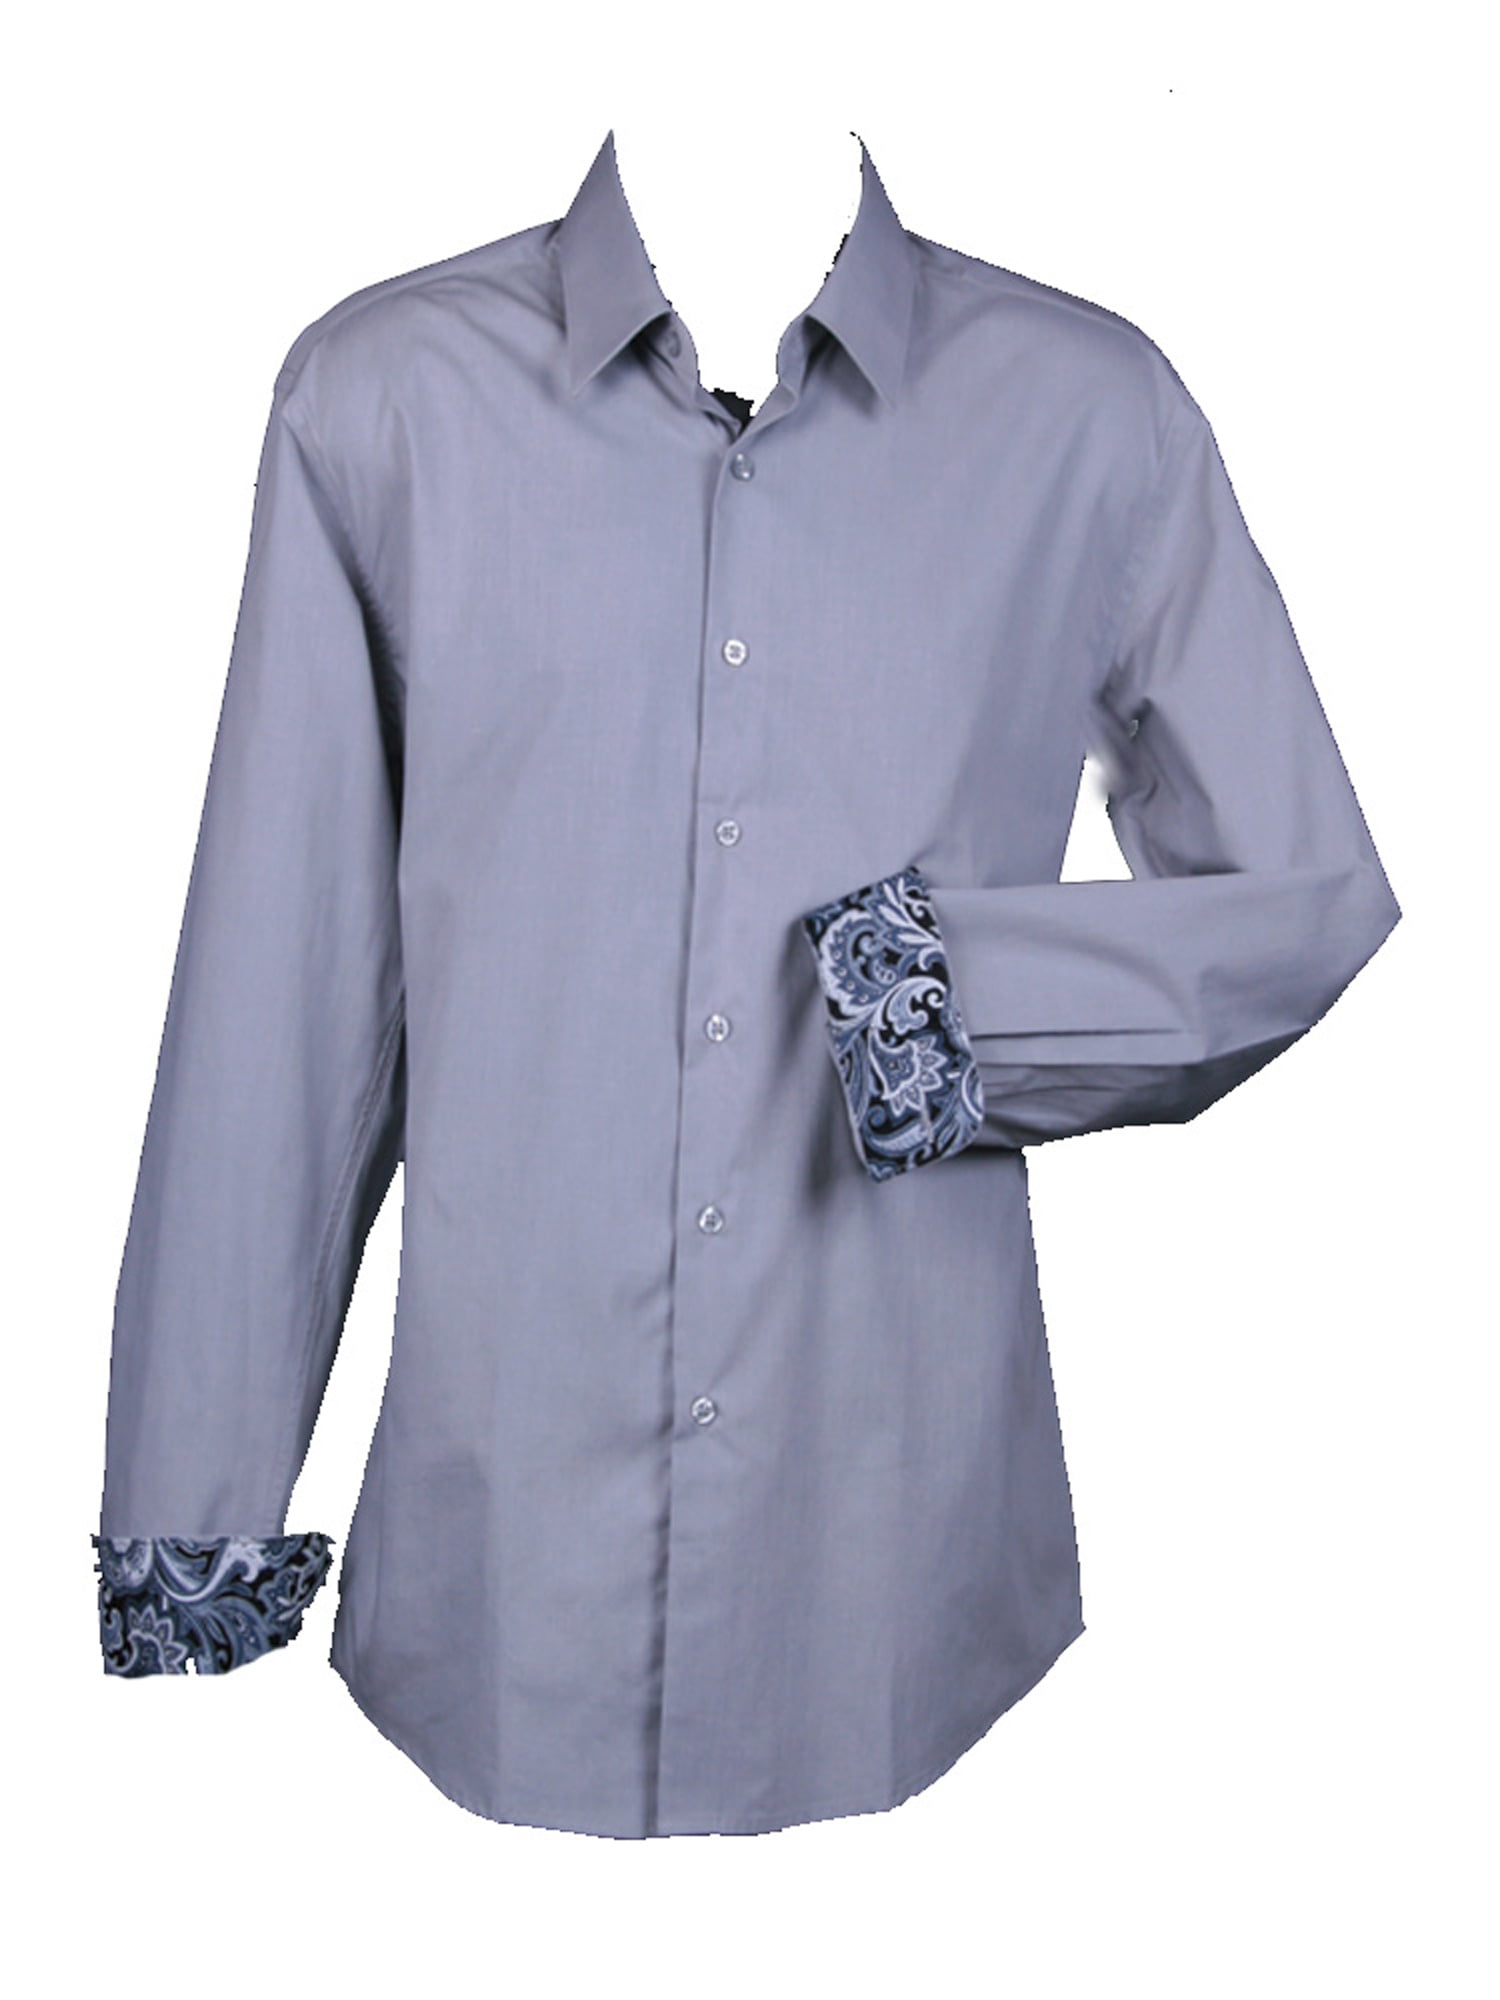 Sunrise Outlet - Men's Slim Fit Basic Solid Color Dress Shirt with